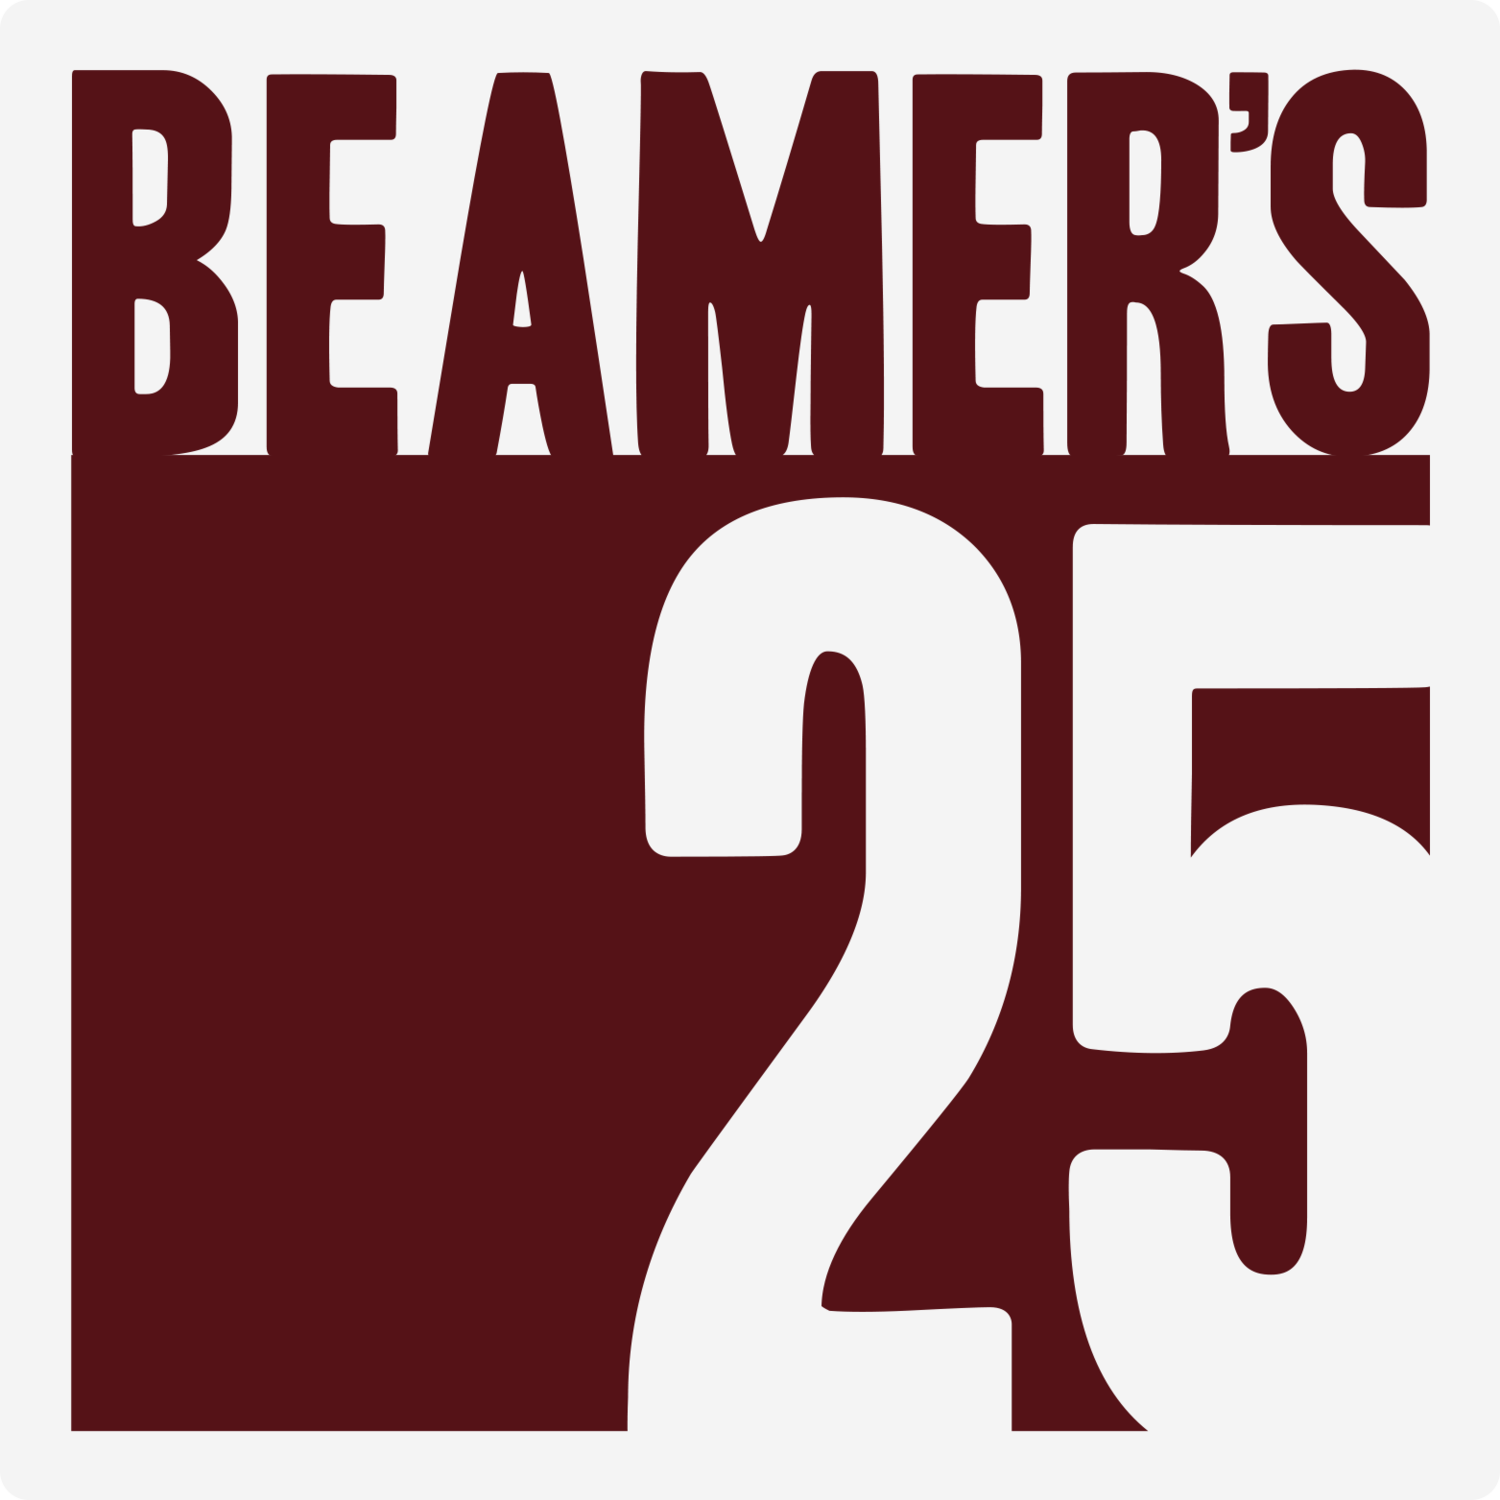 Beamer's 25